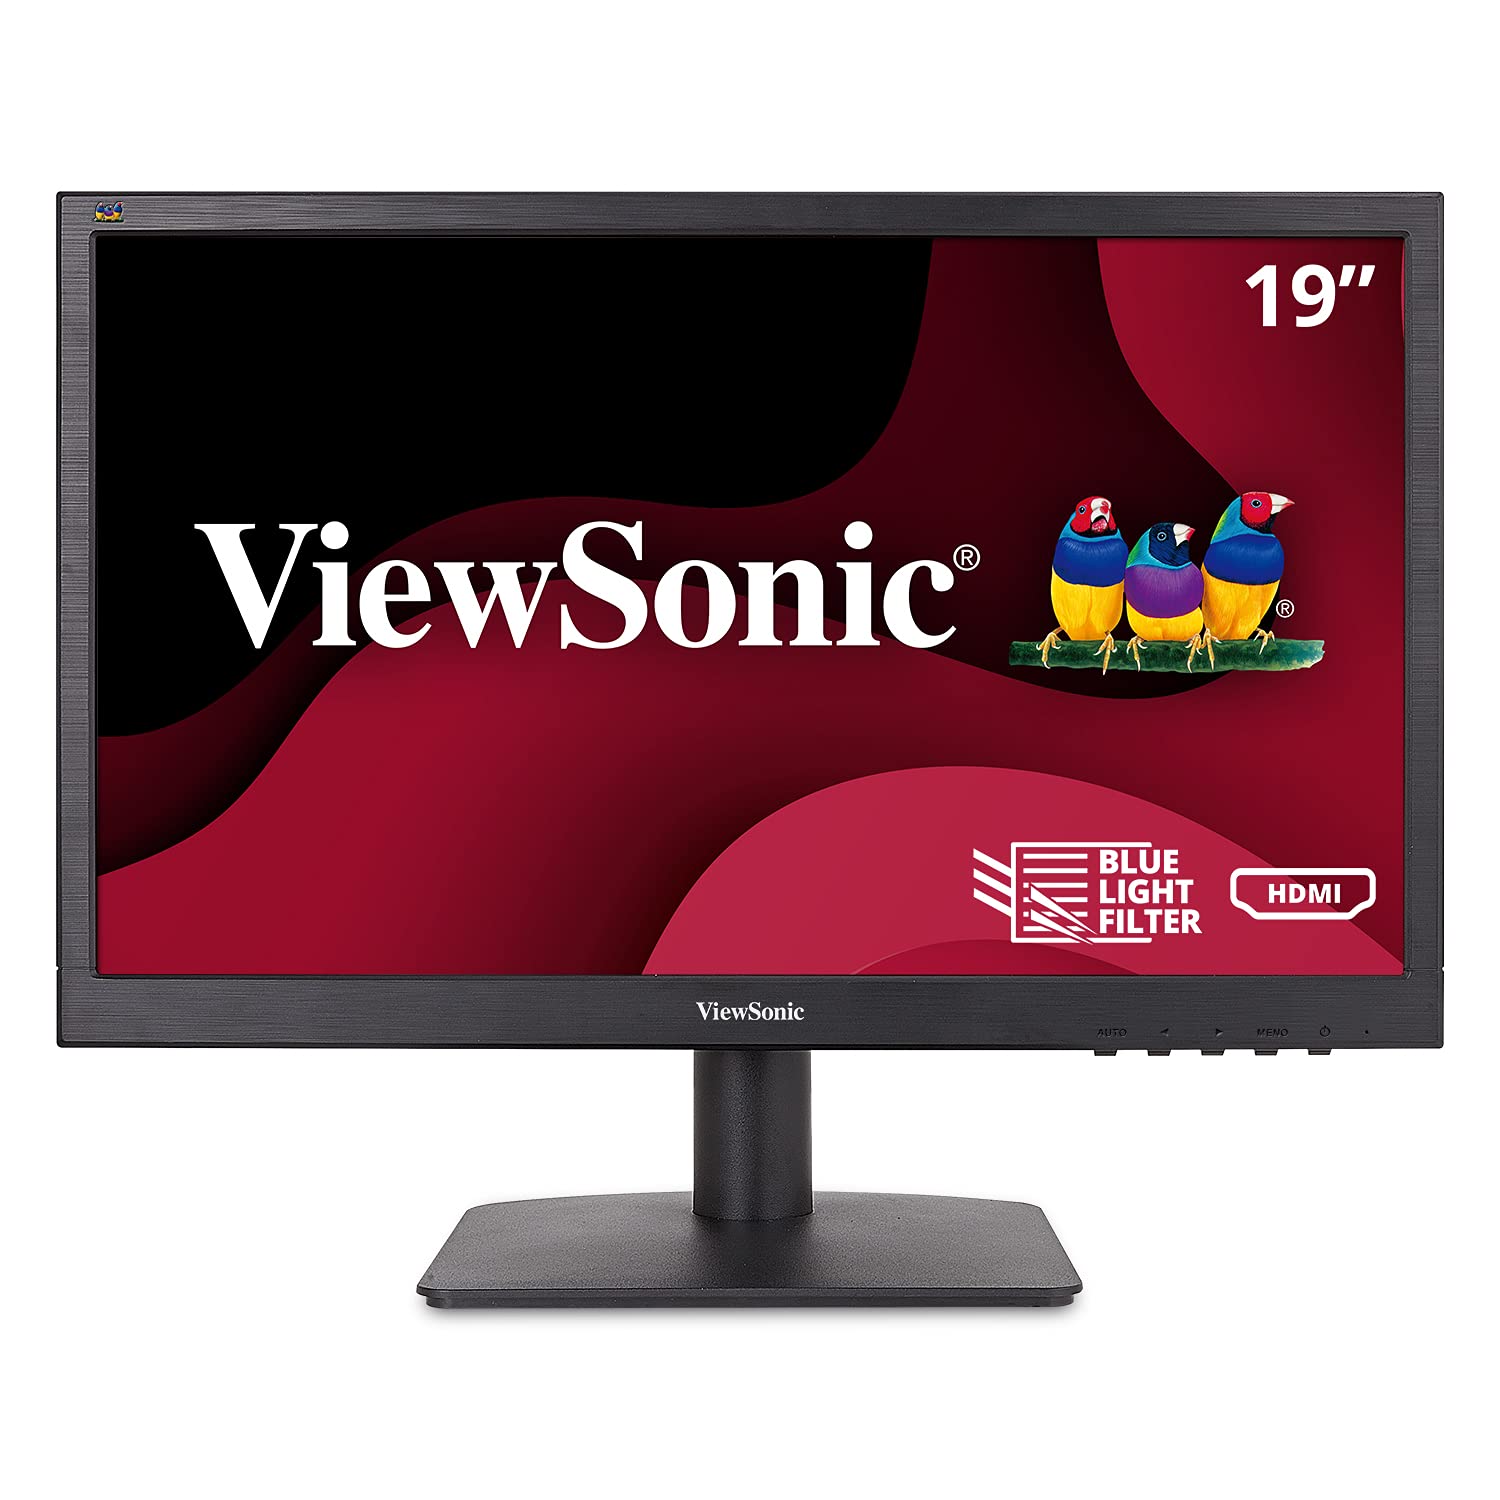  Viewsonic VA1903H 19 インチ WXGA 1366x768p 16:9 ワイドスクリーン モニター、強化された表示快適さ、カスタム ViewModes、家庭およびオフィス向け HDMI を備え...